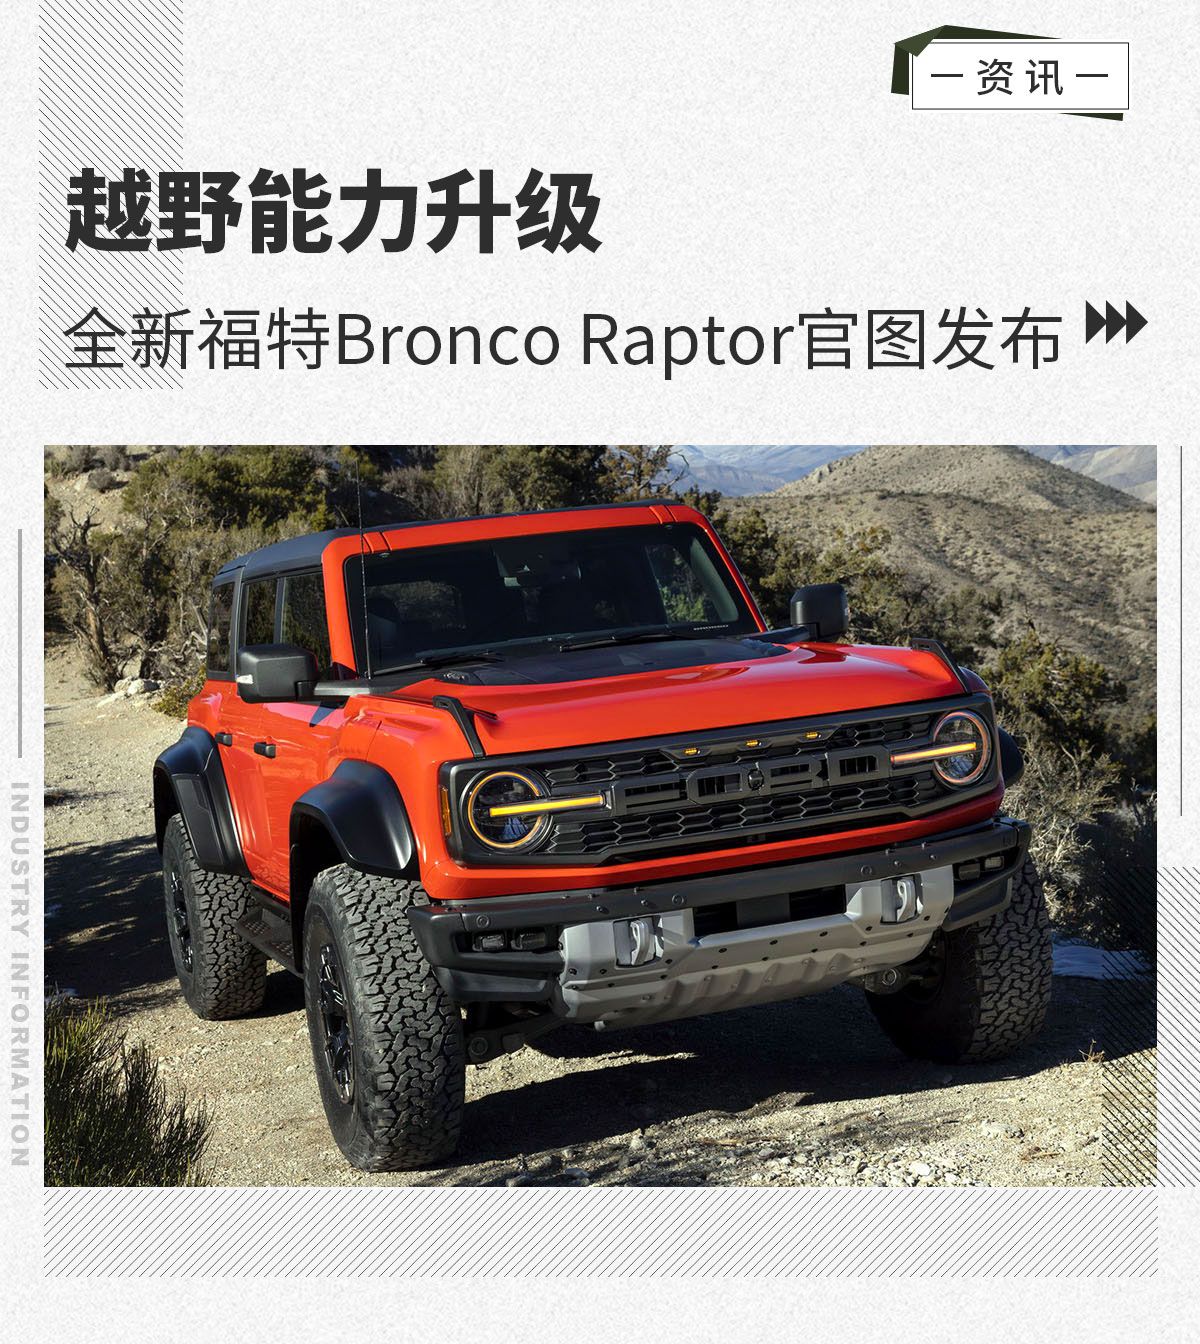 全新福特Bronco Raptor官图发布 越野能力升级